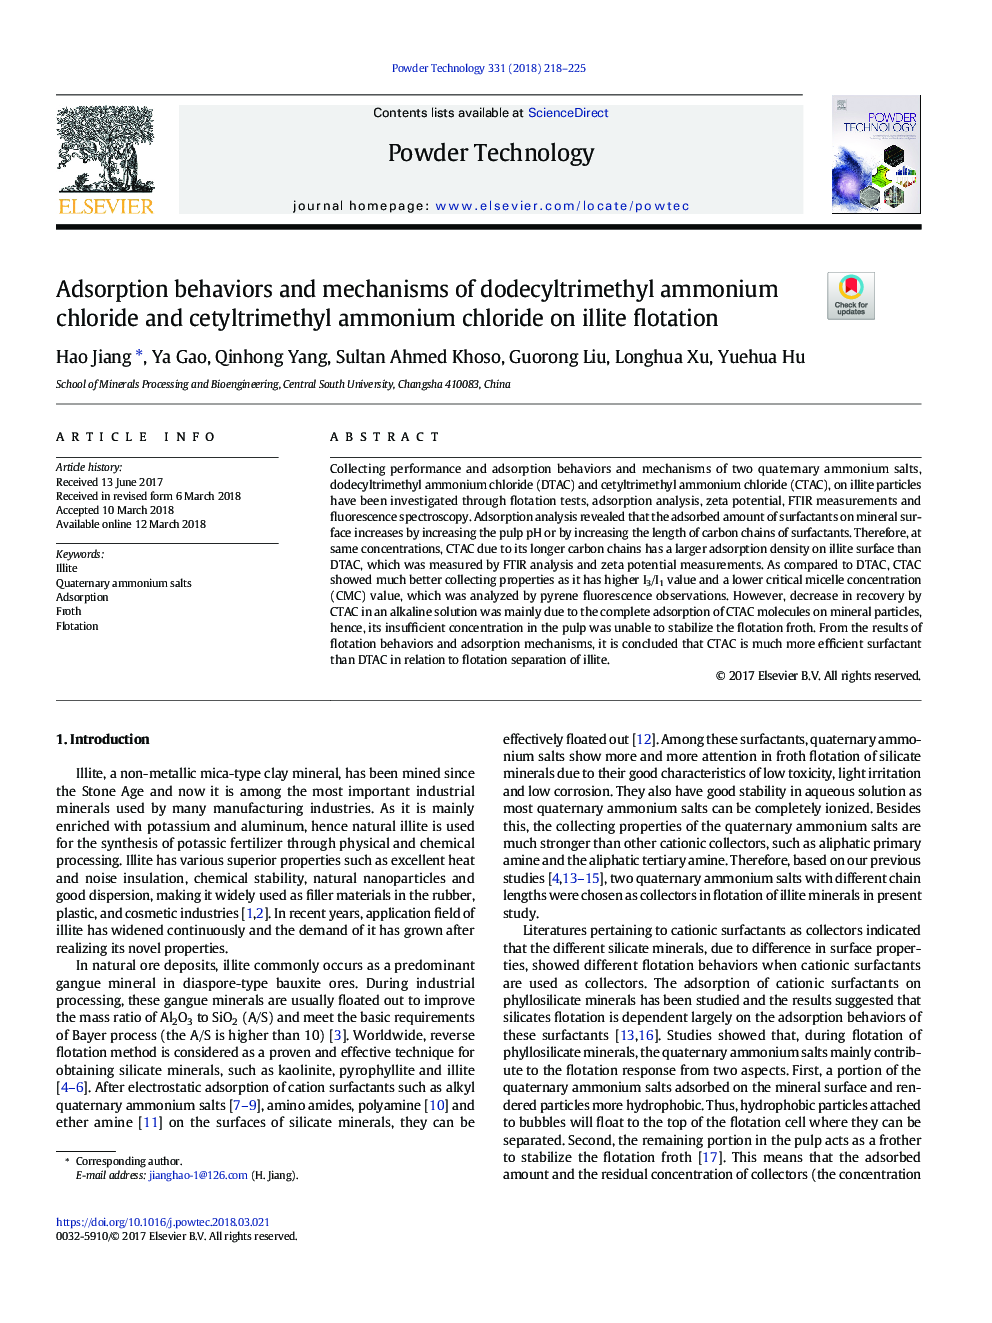 رفتارهای جذب و مکانیزم های دودکشیلتیمیل آمونیوم کلرید و استیلتریال آمونیوم کلرید در فلوتاسیون ملک 